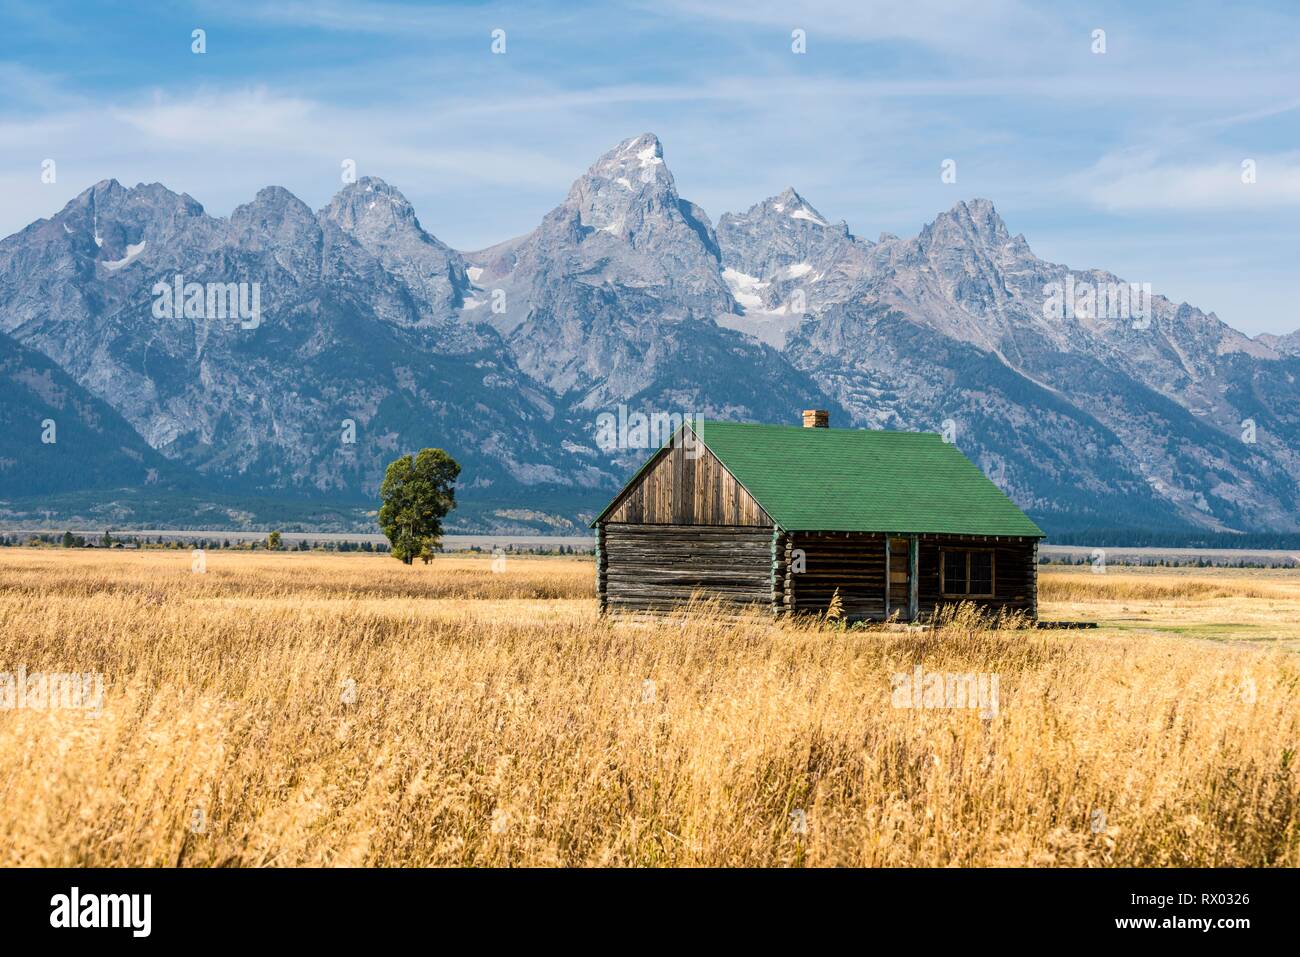 Old barn in front of the Teton Range mountain range, Mormon Row Historic District, Grand Teton National Park, Wyoming, USA Stock Photo